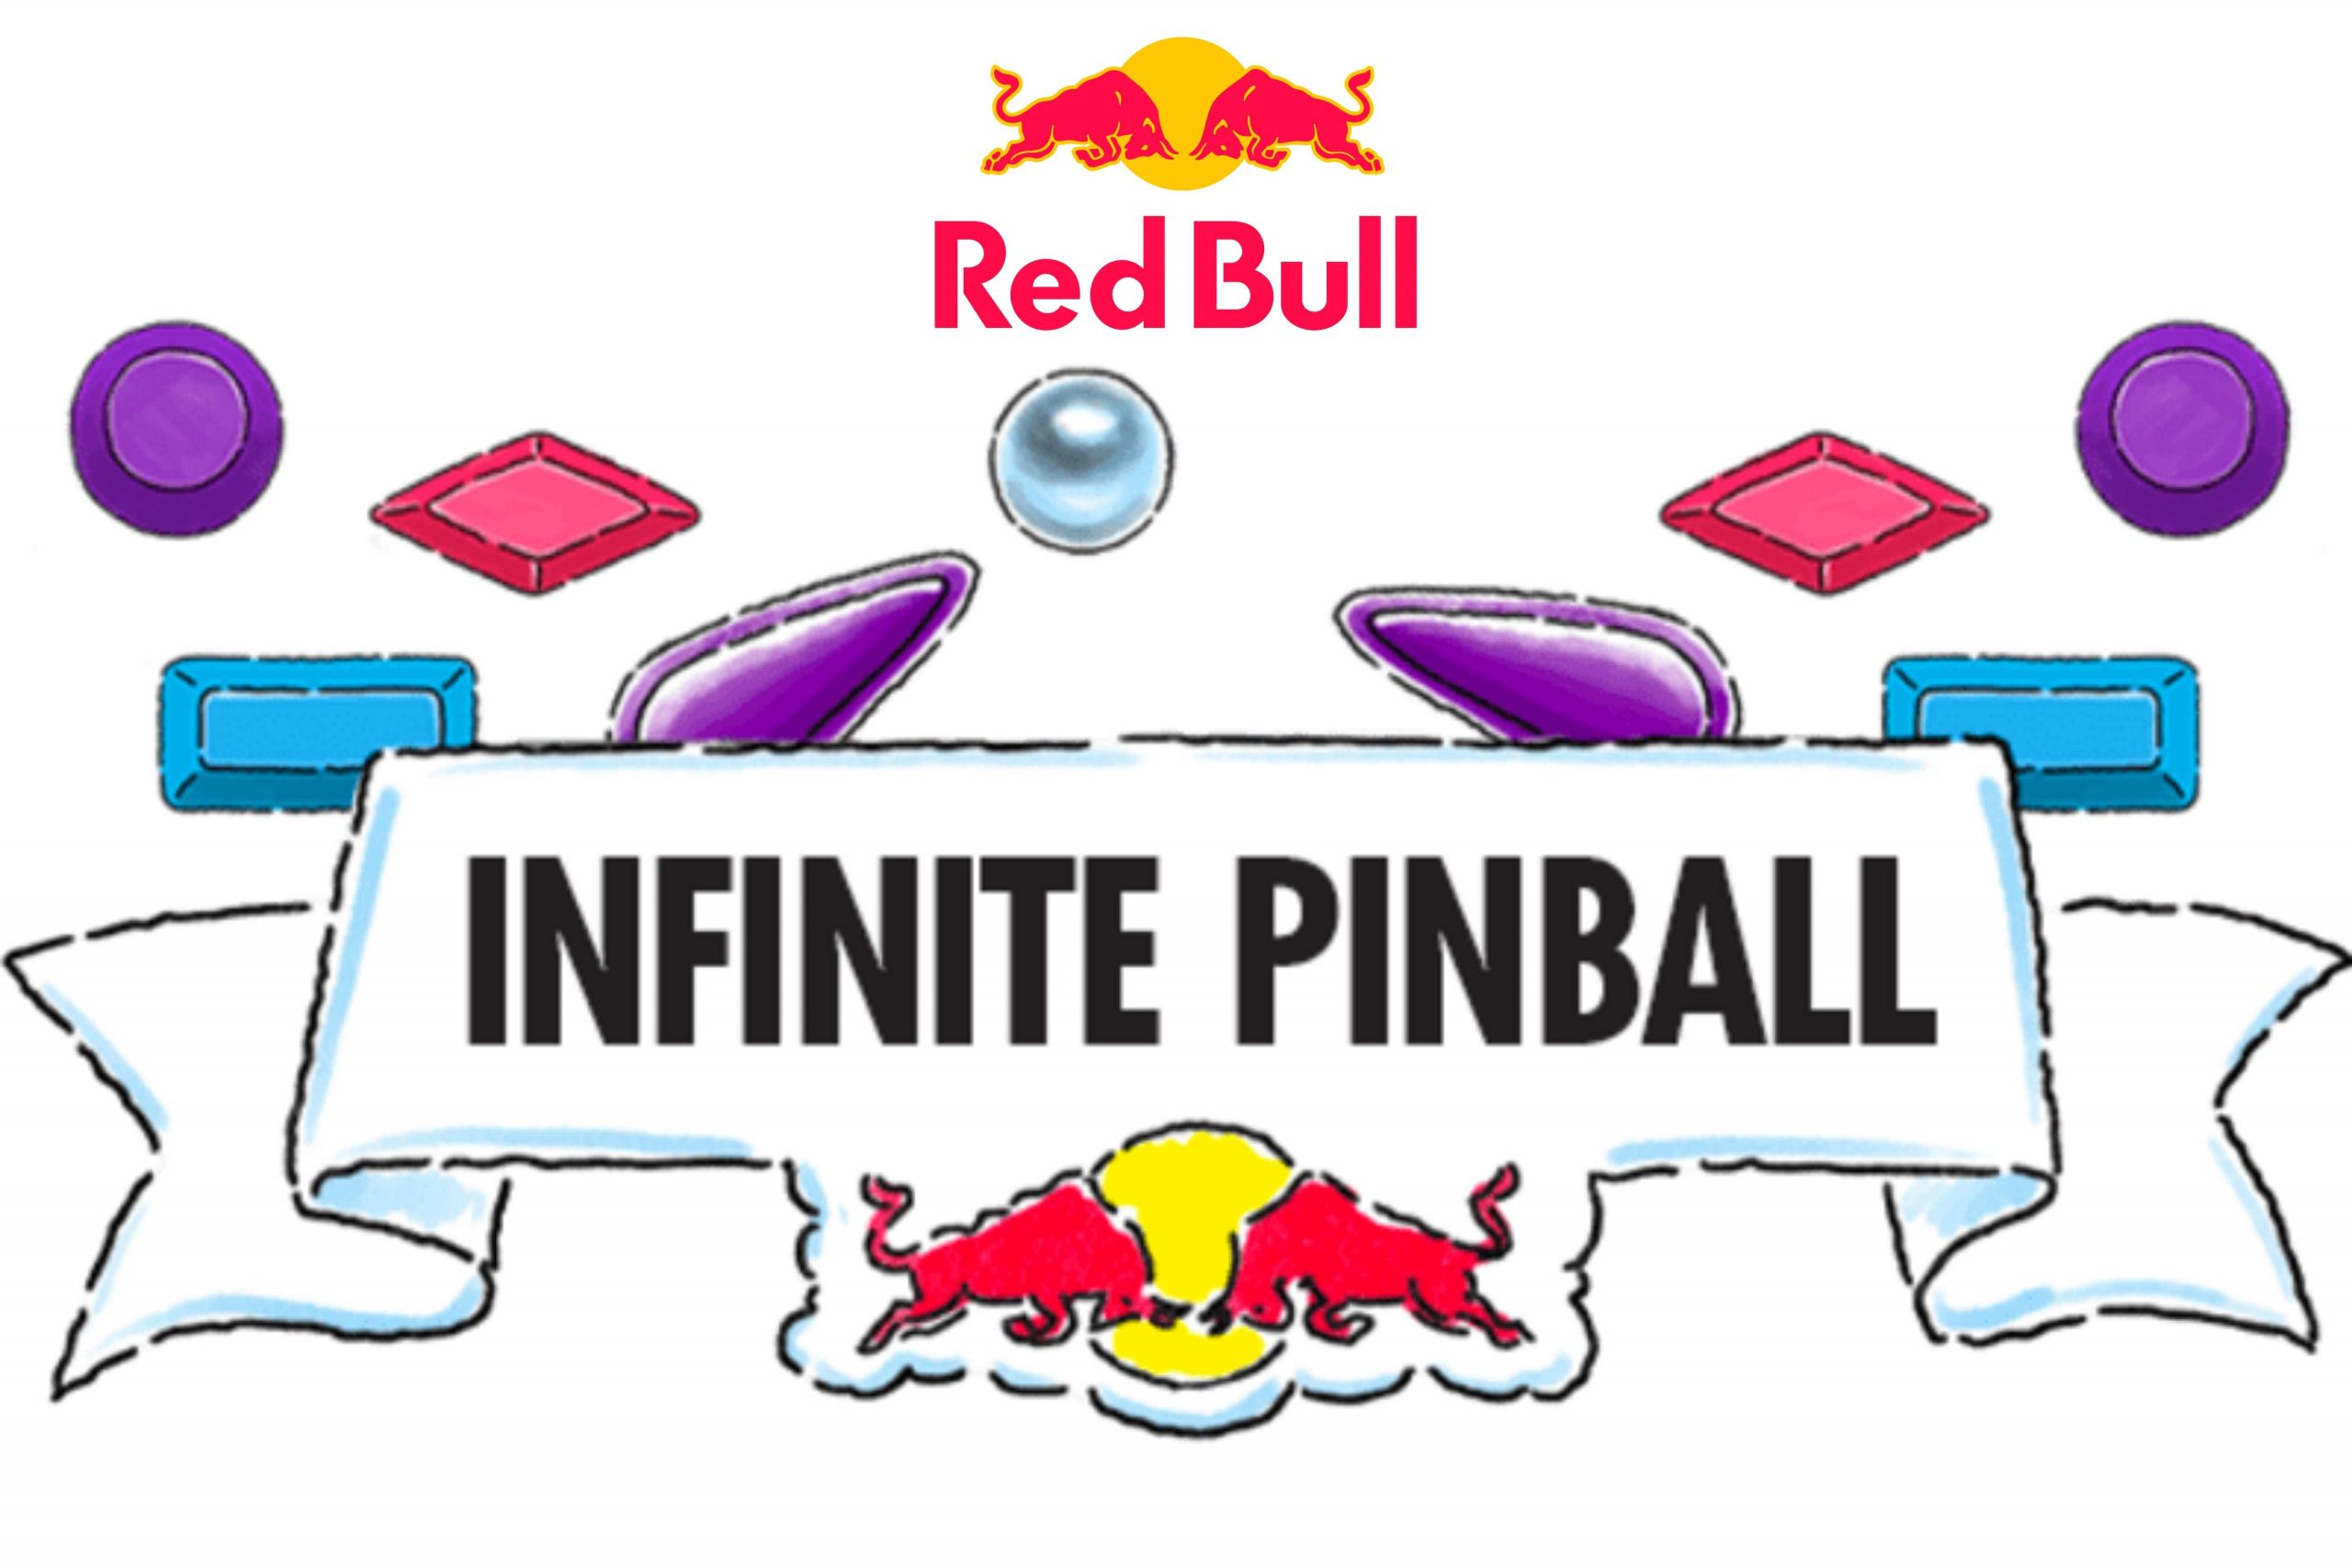 Concorso “Red Bull Pinball 2021”: come vincere 300 couvette con 2 lattine di Red Bull Gratis + un Super Premio